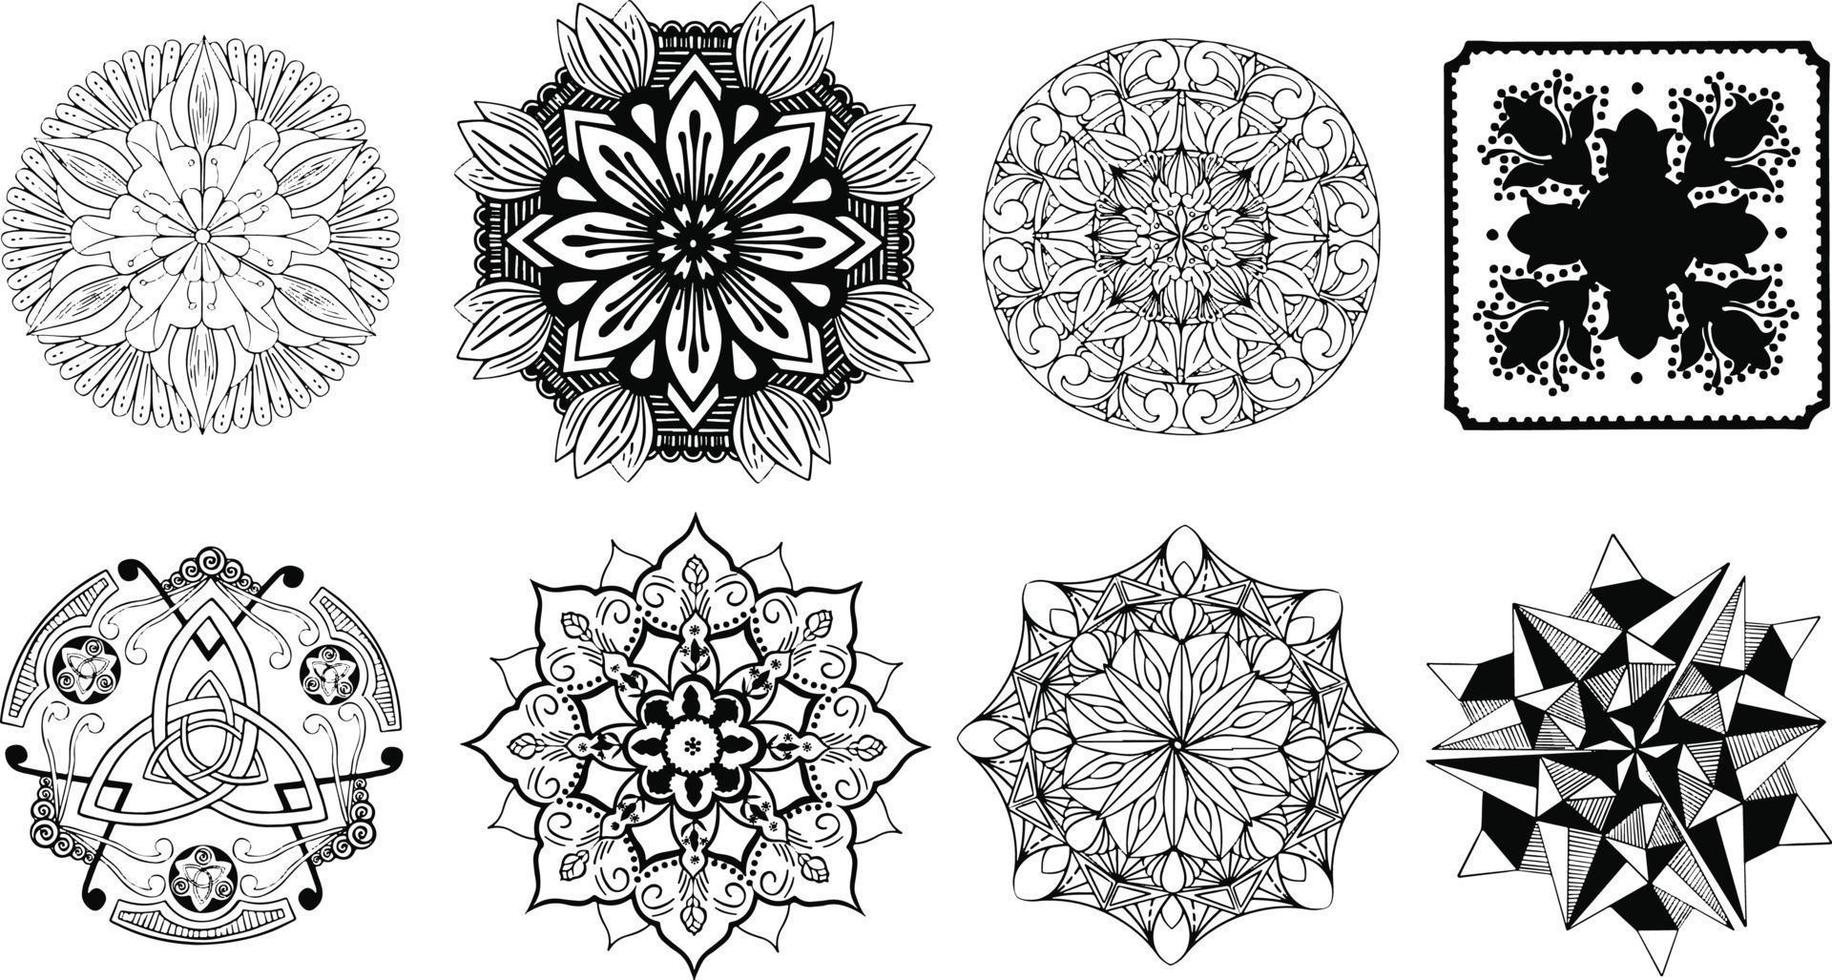 padrão circular em forma de mandala para henna, mehndi, tatuagem, decoração. ornamento decorativo em estilo étnico oriental. página do livro para colorir. . ilustração vetorial vetor